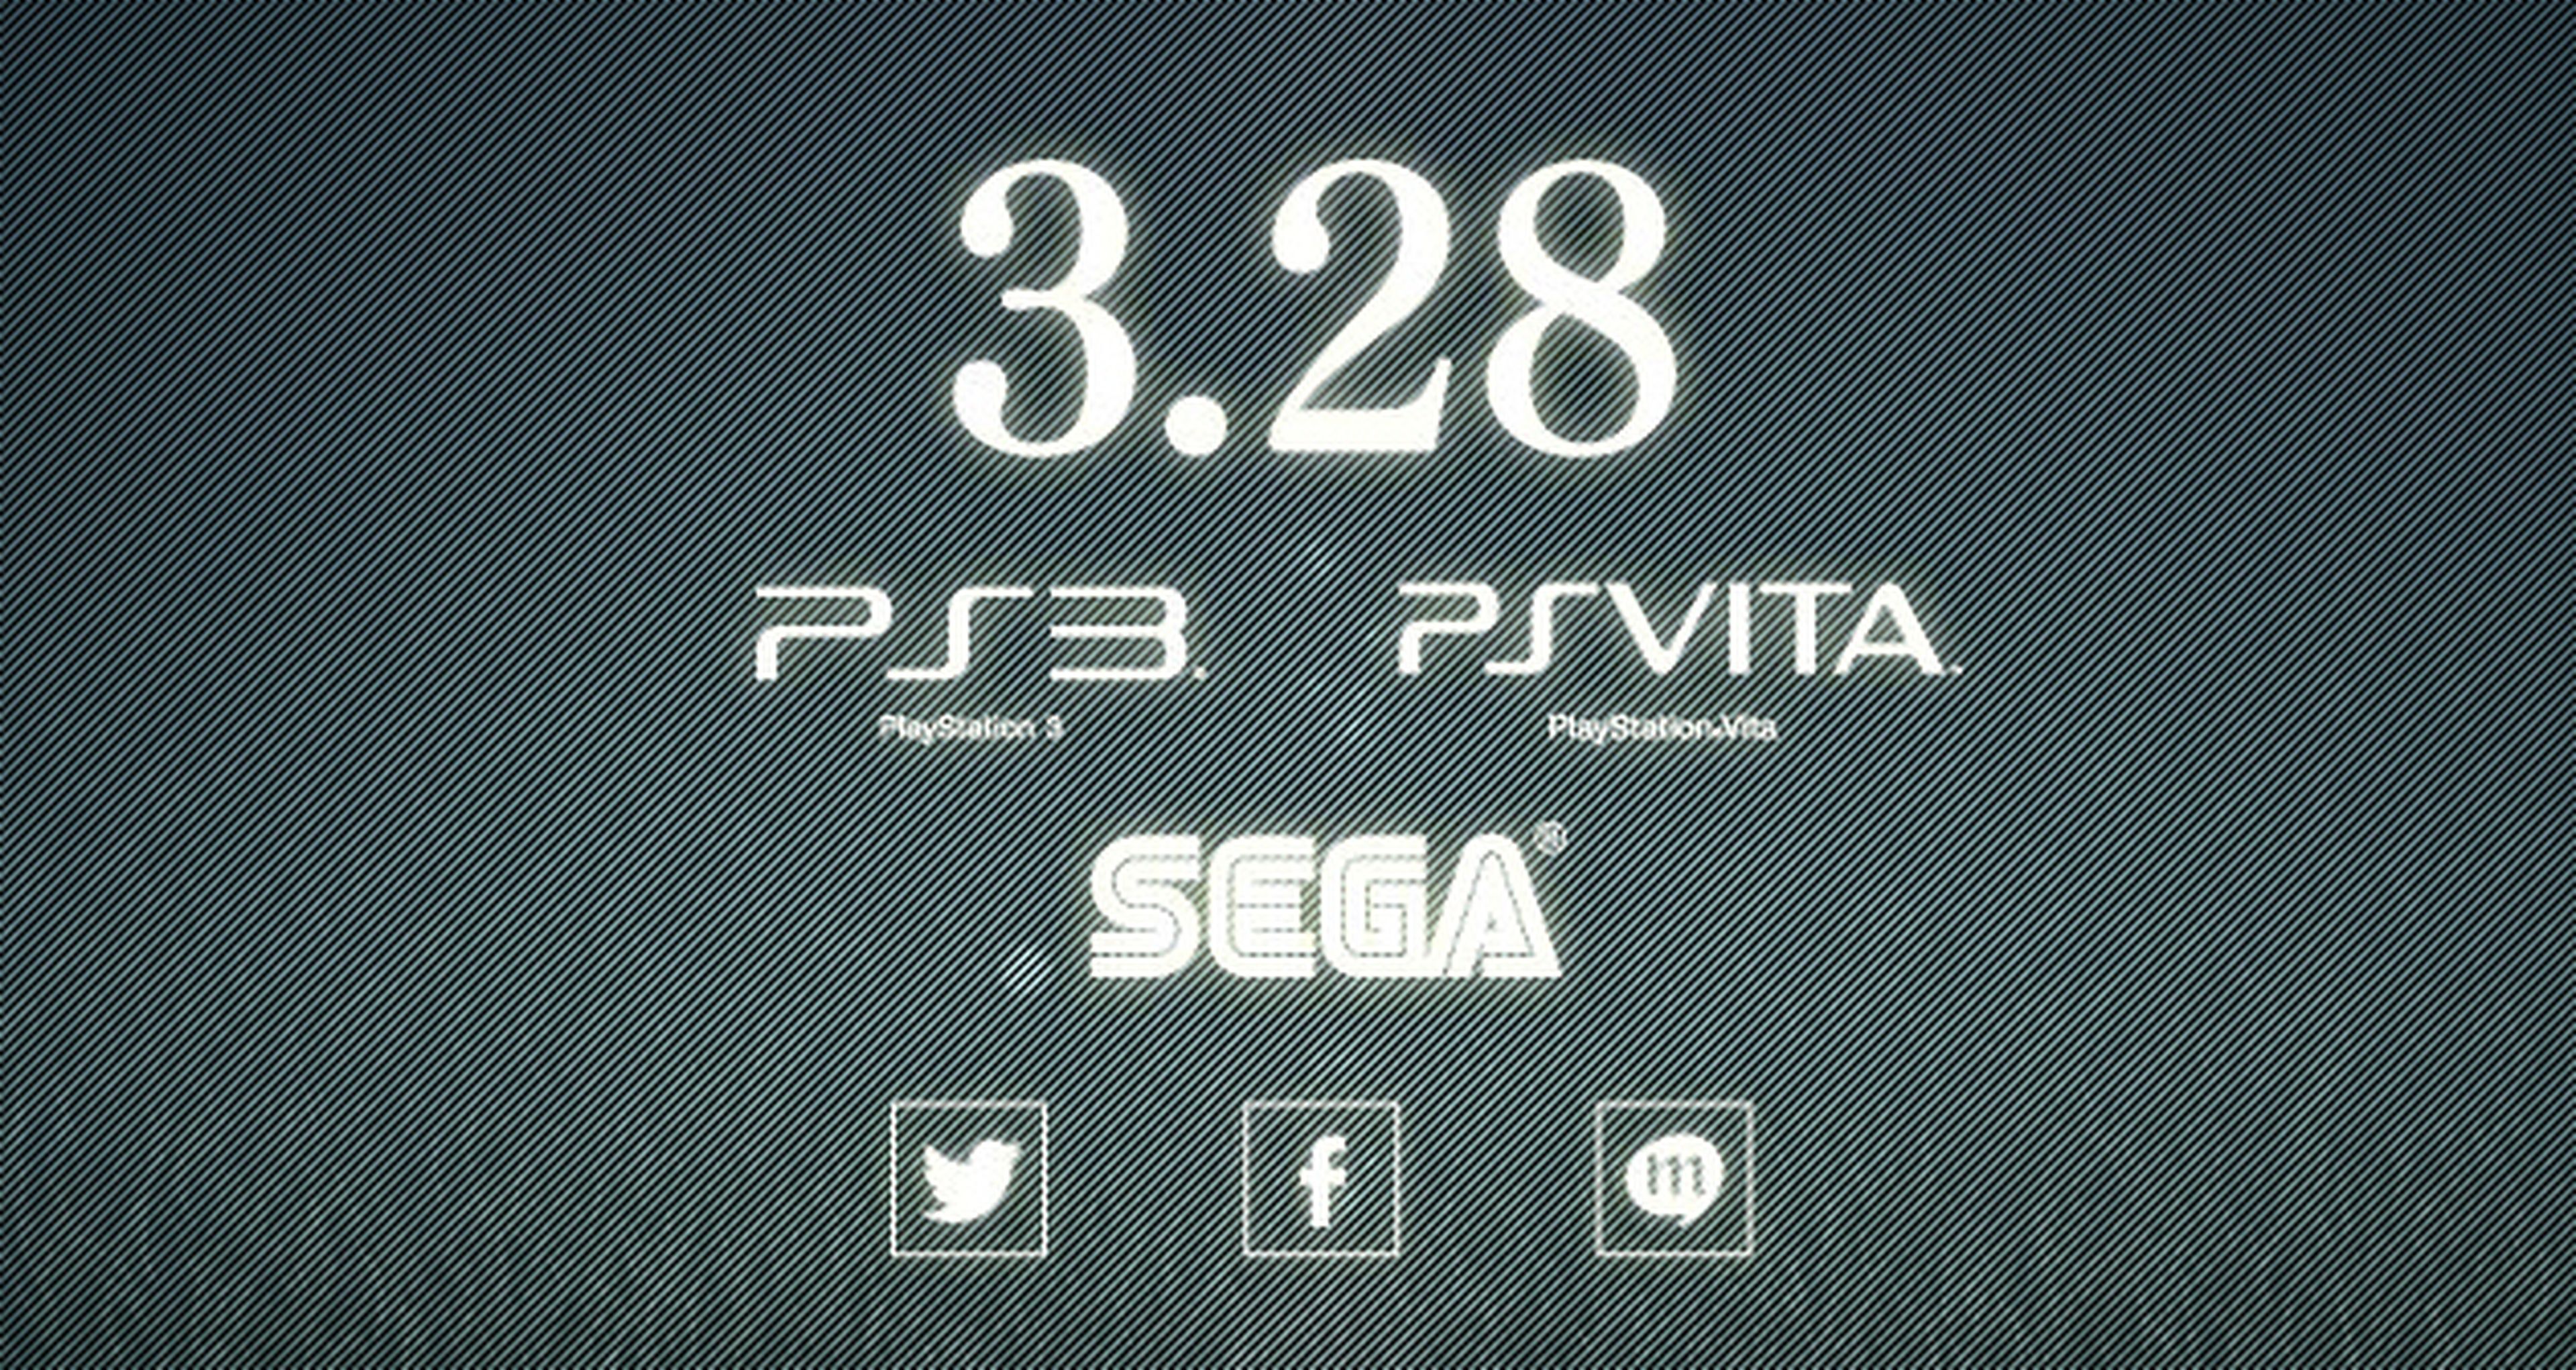 SEGA prepara algo para PlayStation 3 y PS Vita